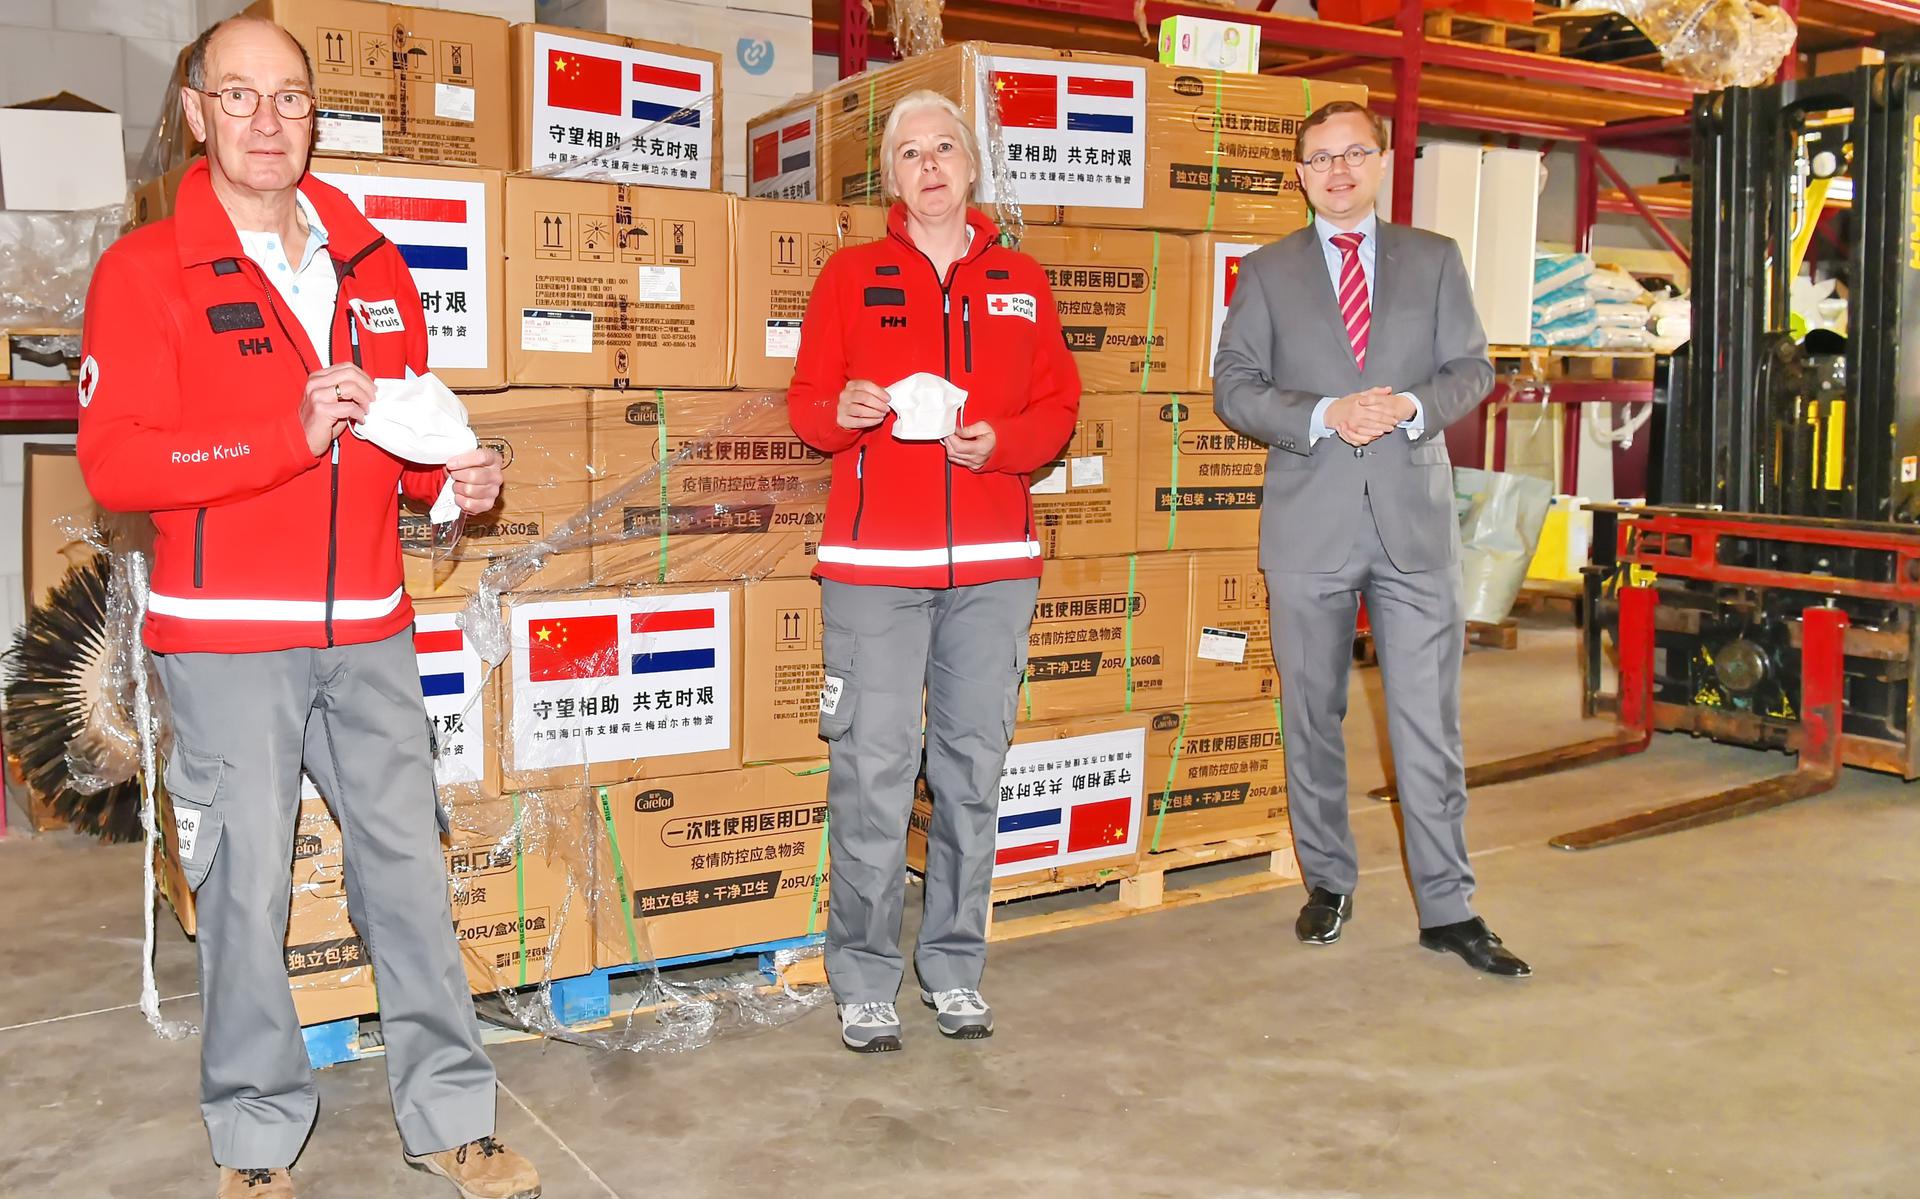 Meppel heeft 50.000 mondkapjes ontvangen uit China. Burgemeester Korteland heeft deze overgedragen aan het Rode Kruis.